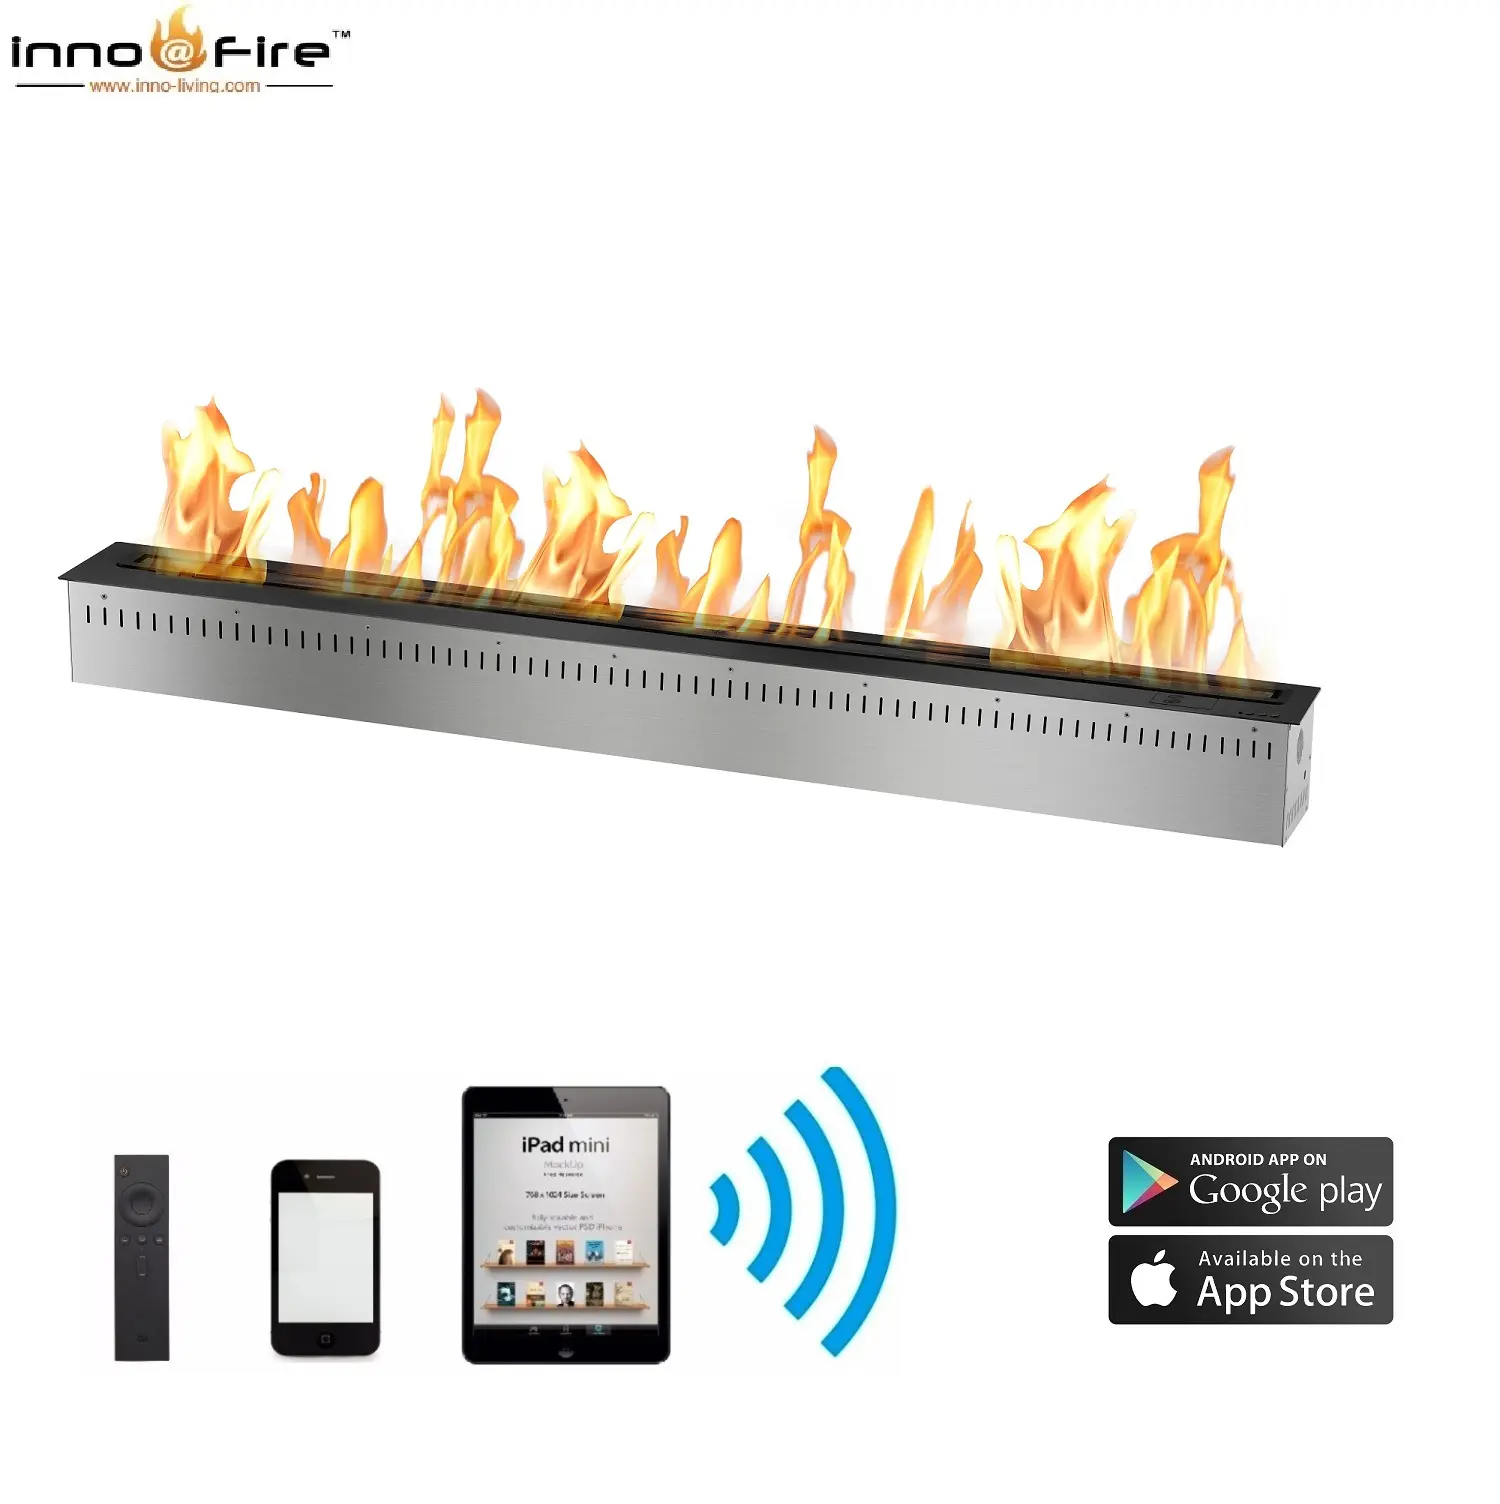 Hot Sale 60 inch modern fireplace design images ethanol burner fireplace